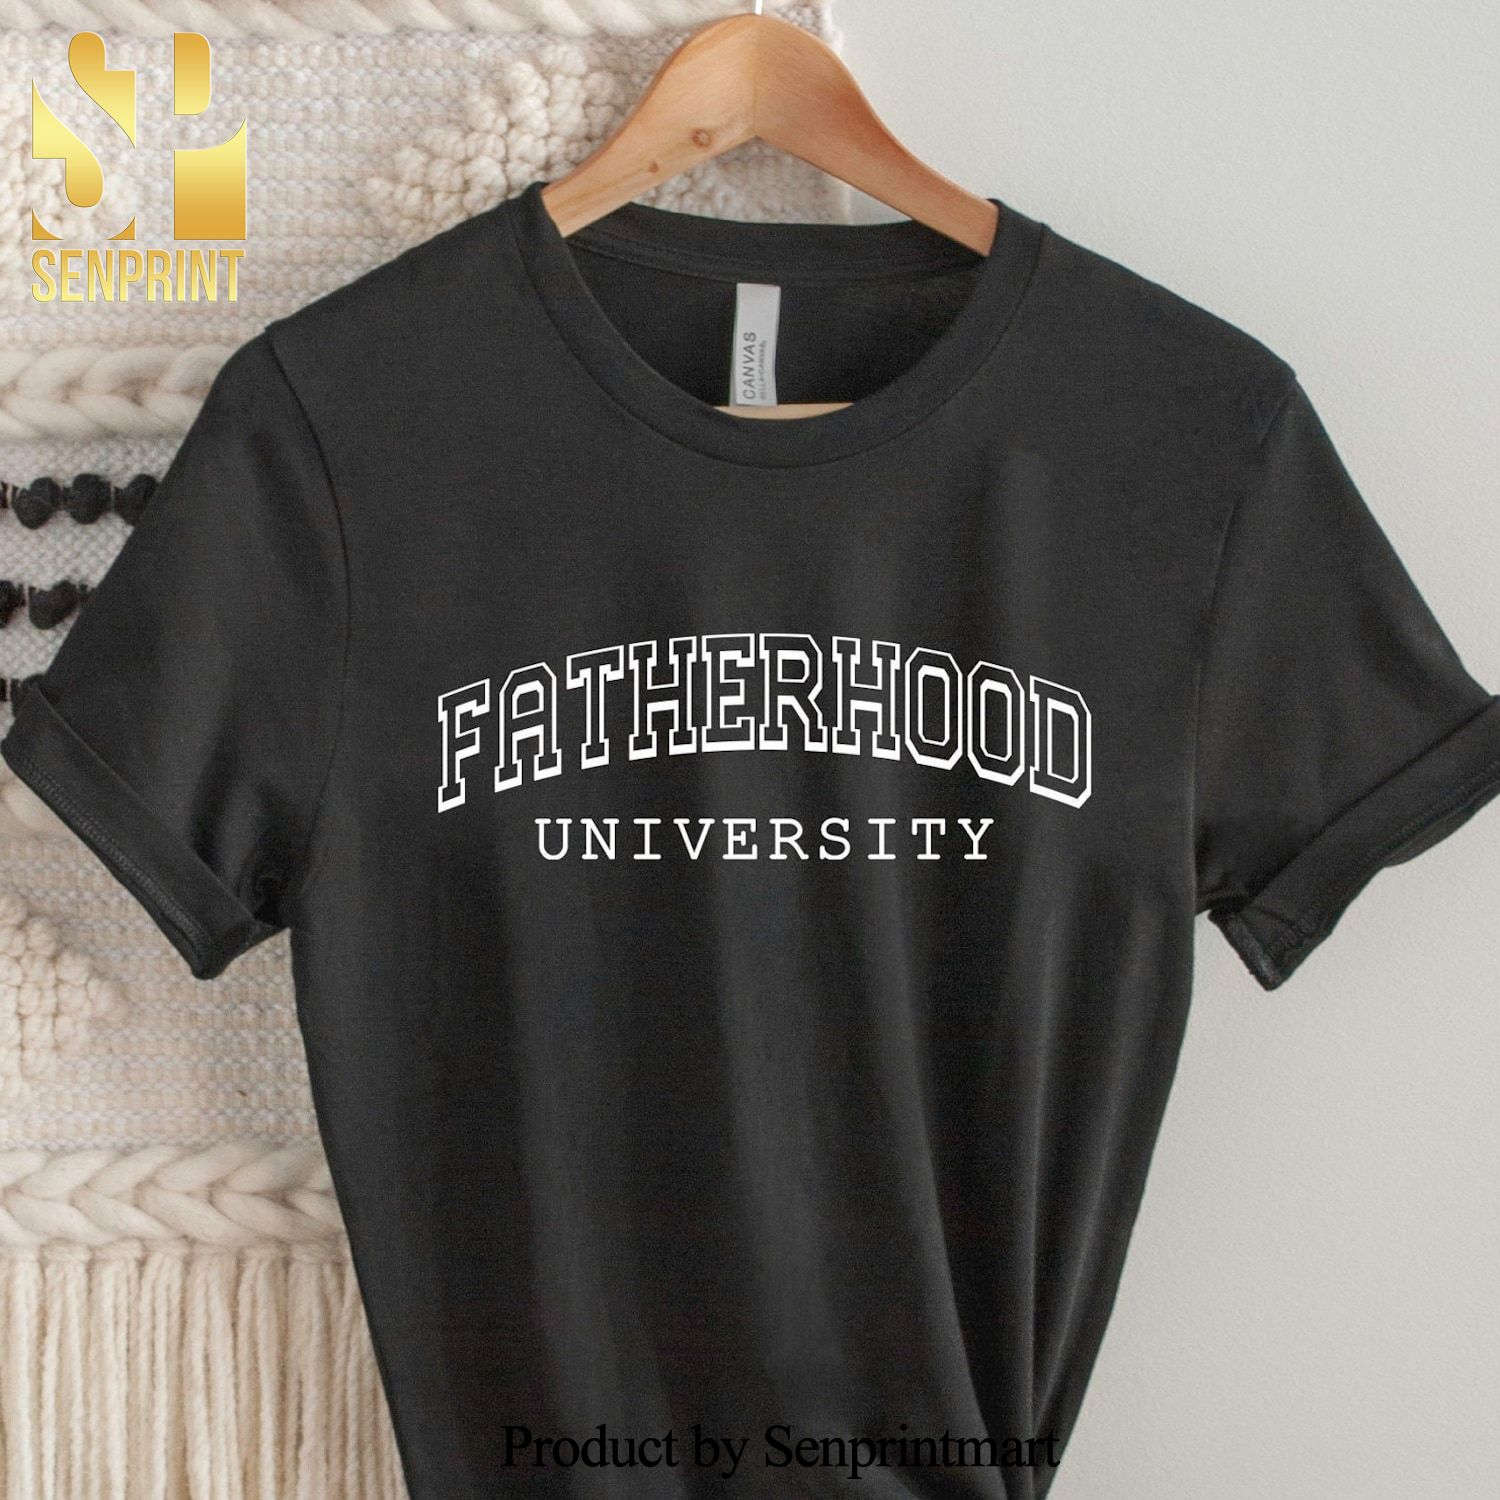 Fatherhood University Fathers Day Gift Shirt